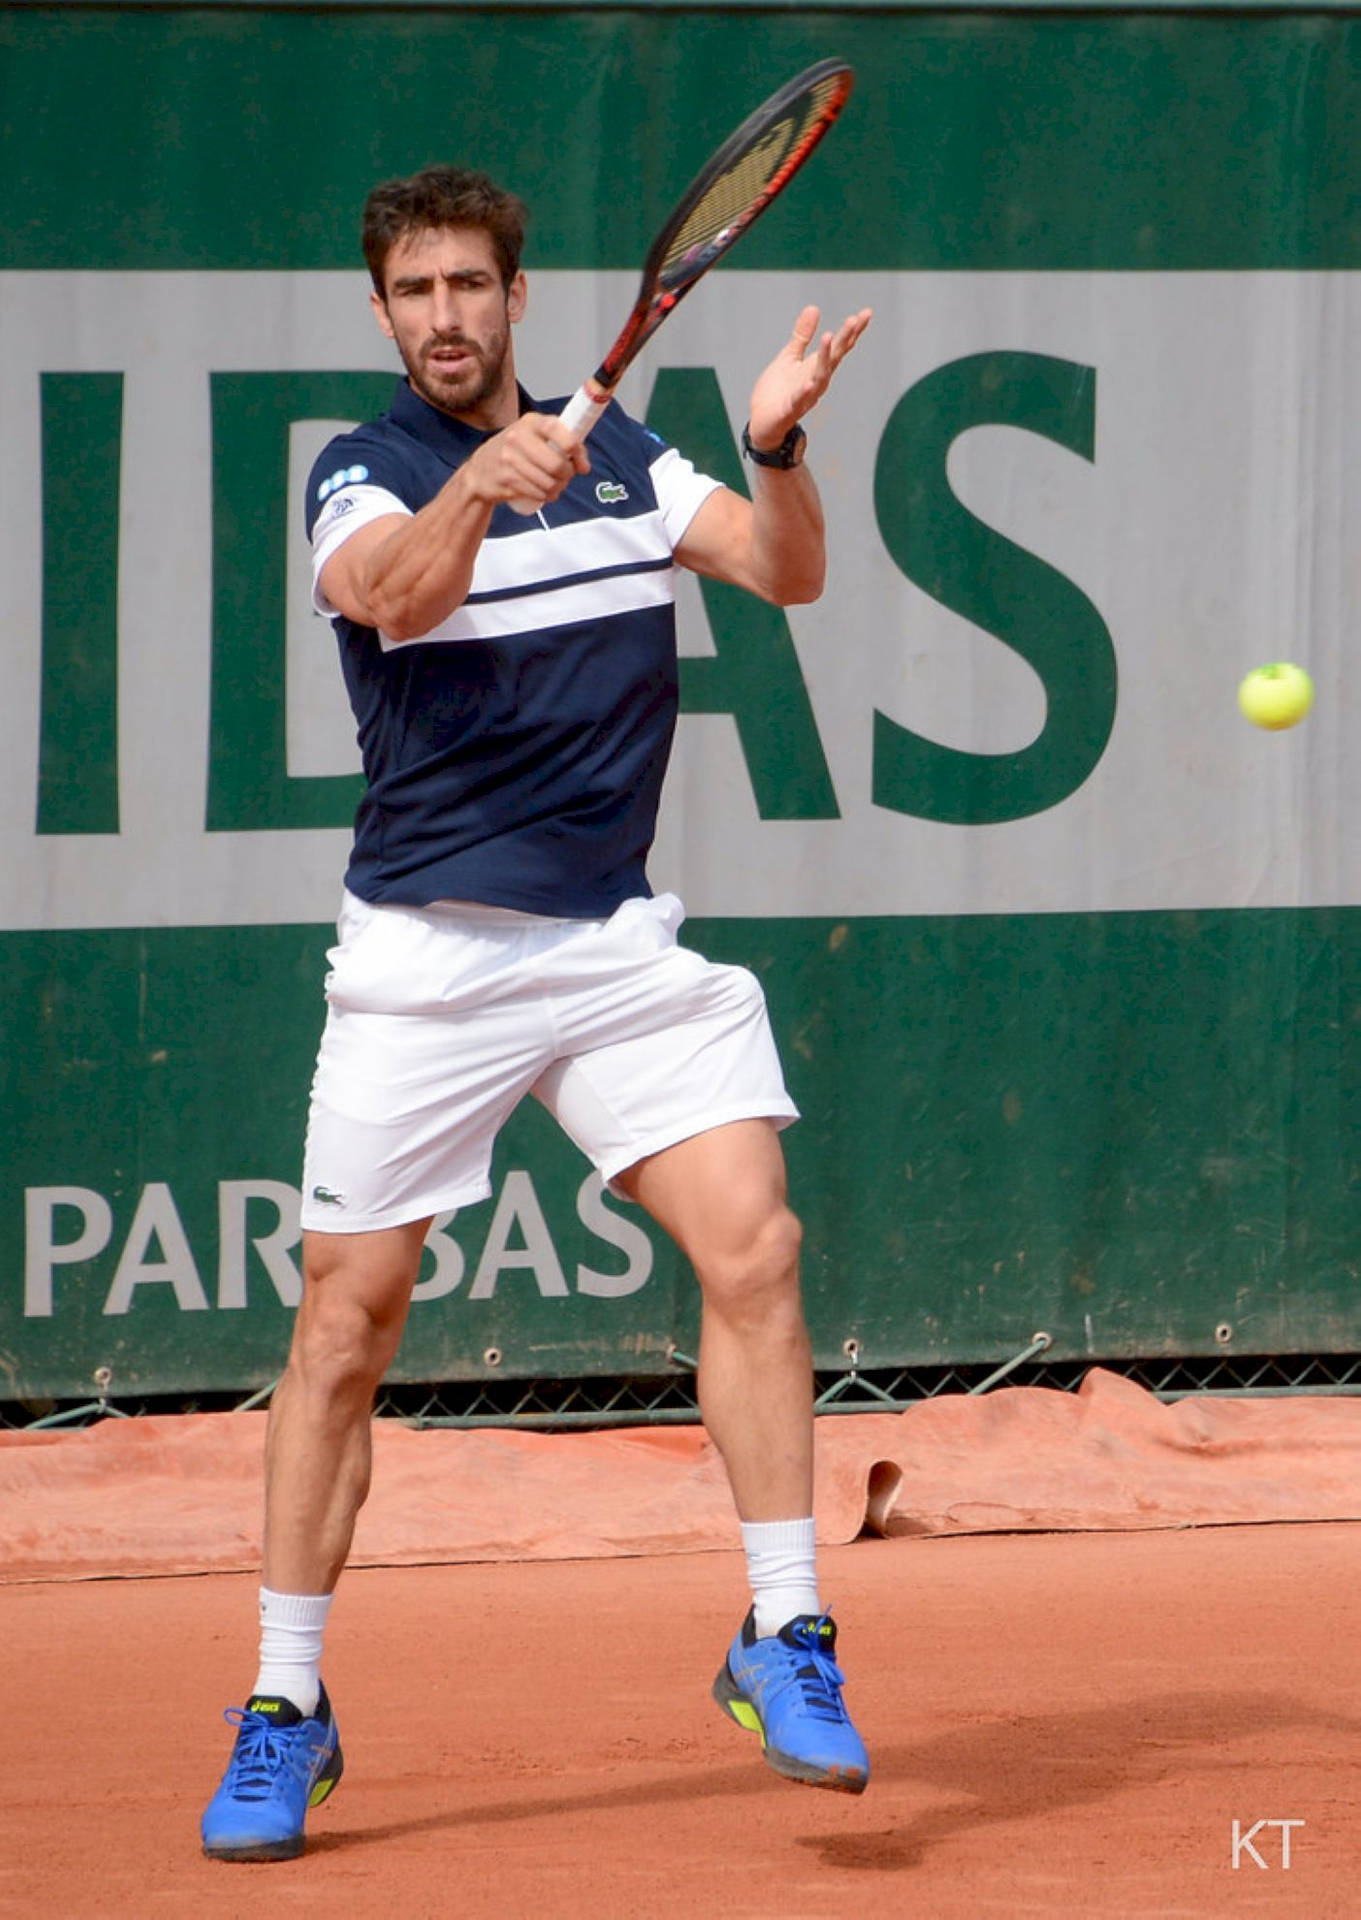 Pablo Cuevas Tennis Serve Wallpaper